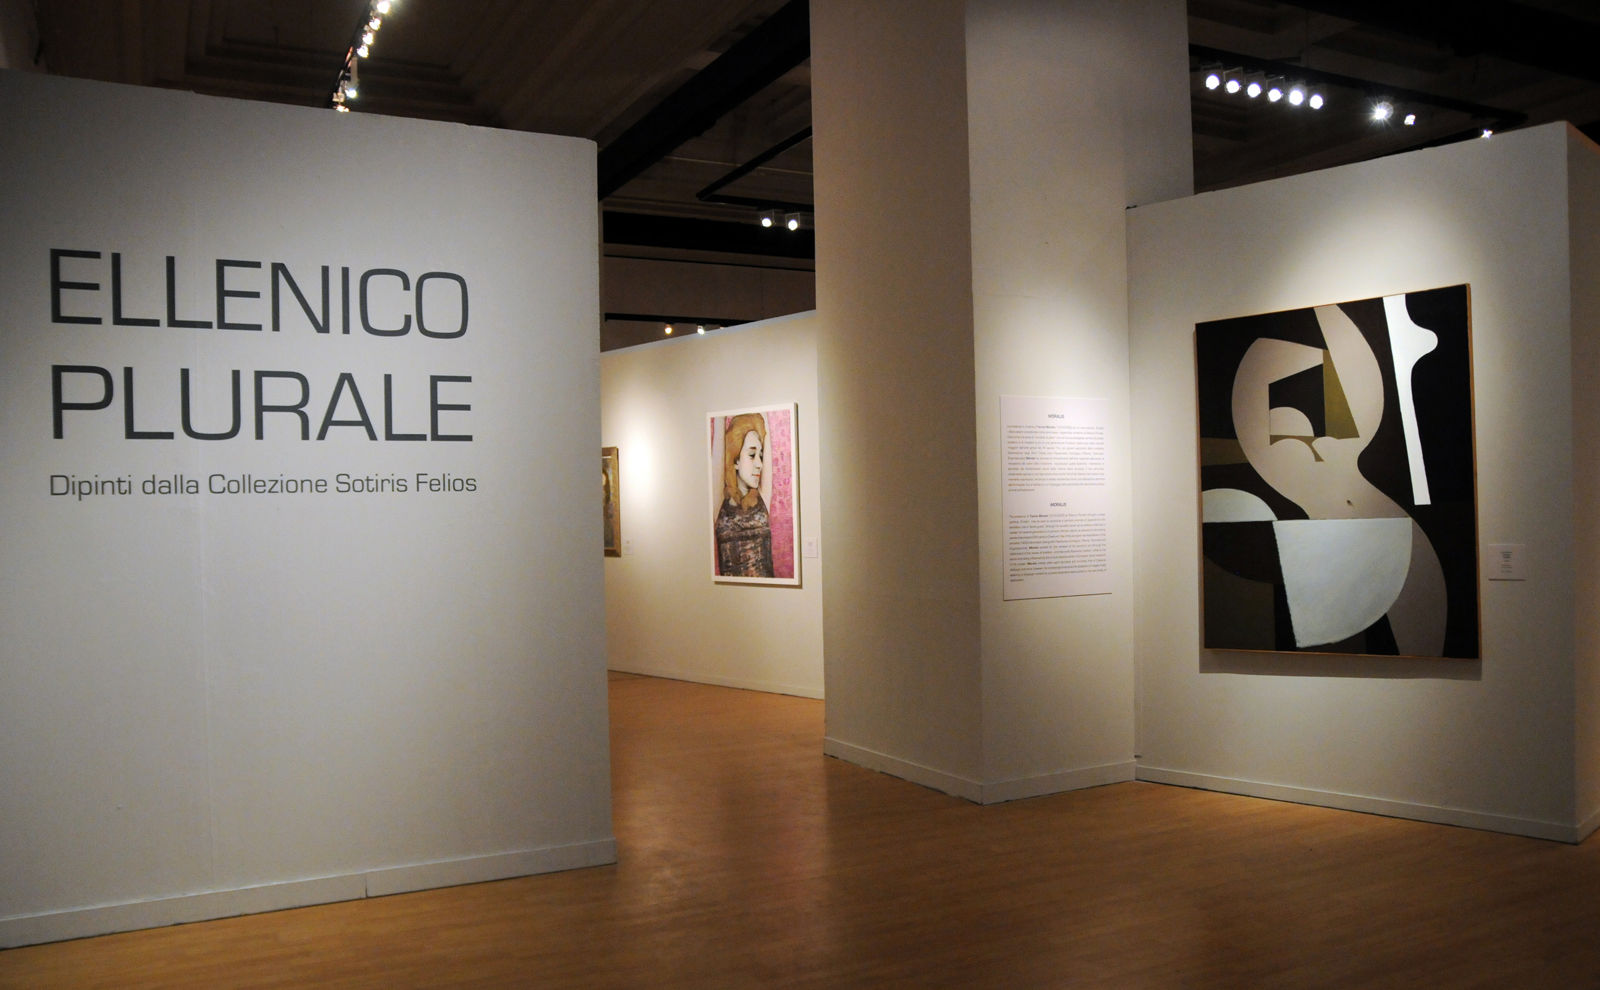 Exhibition view of “Ellenico Plurale: Dipinti dalla Collezione Sotiris Felios“, Complesso del Vittoriano, Rome, 2013